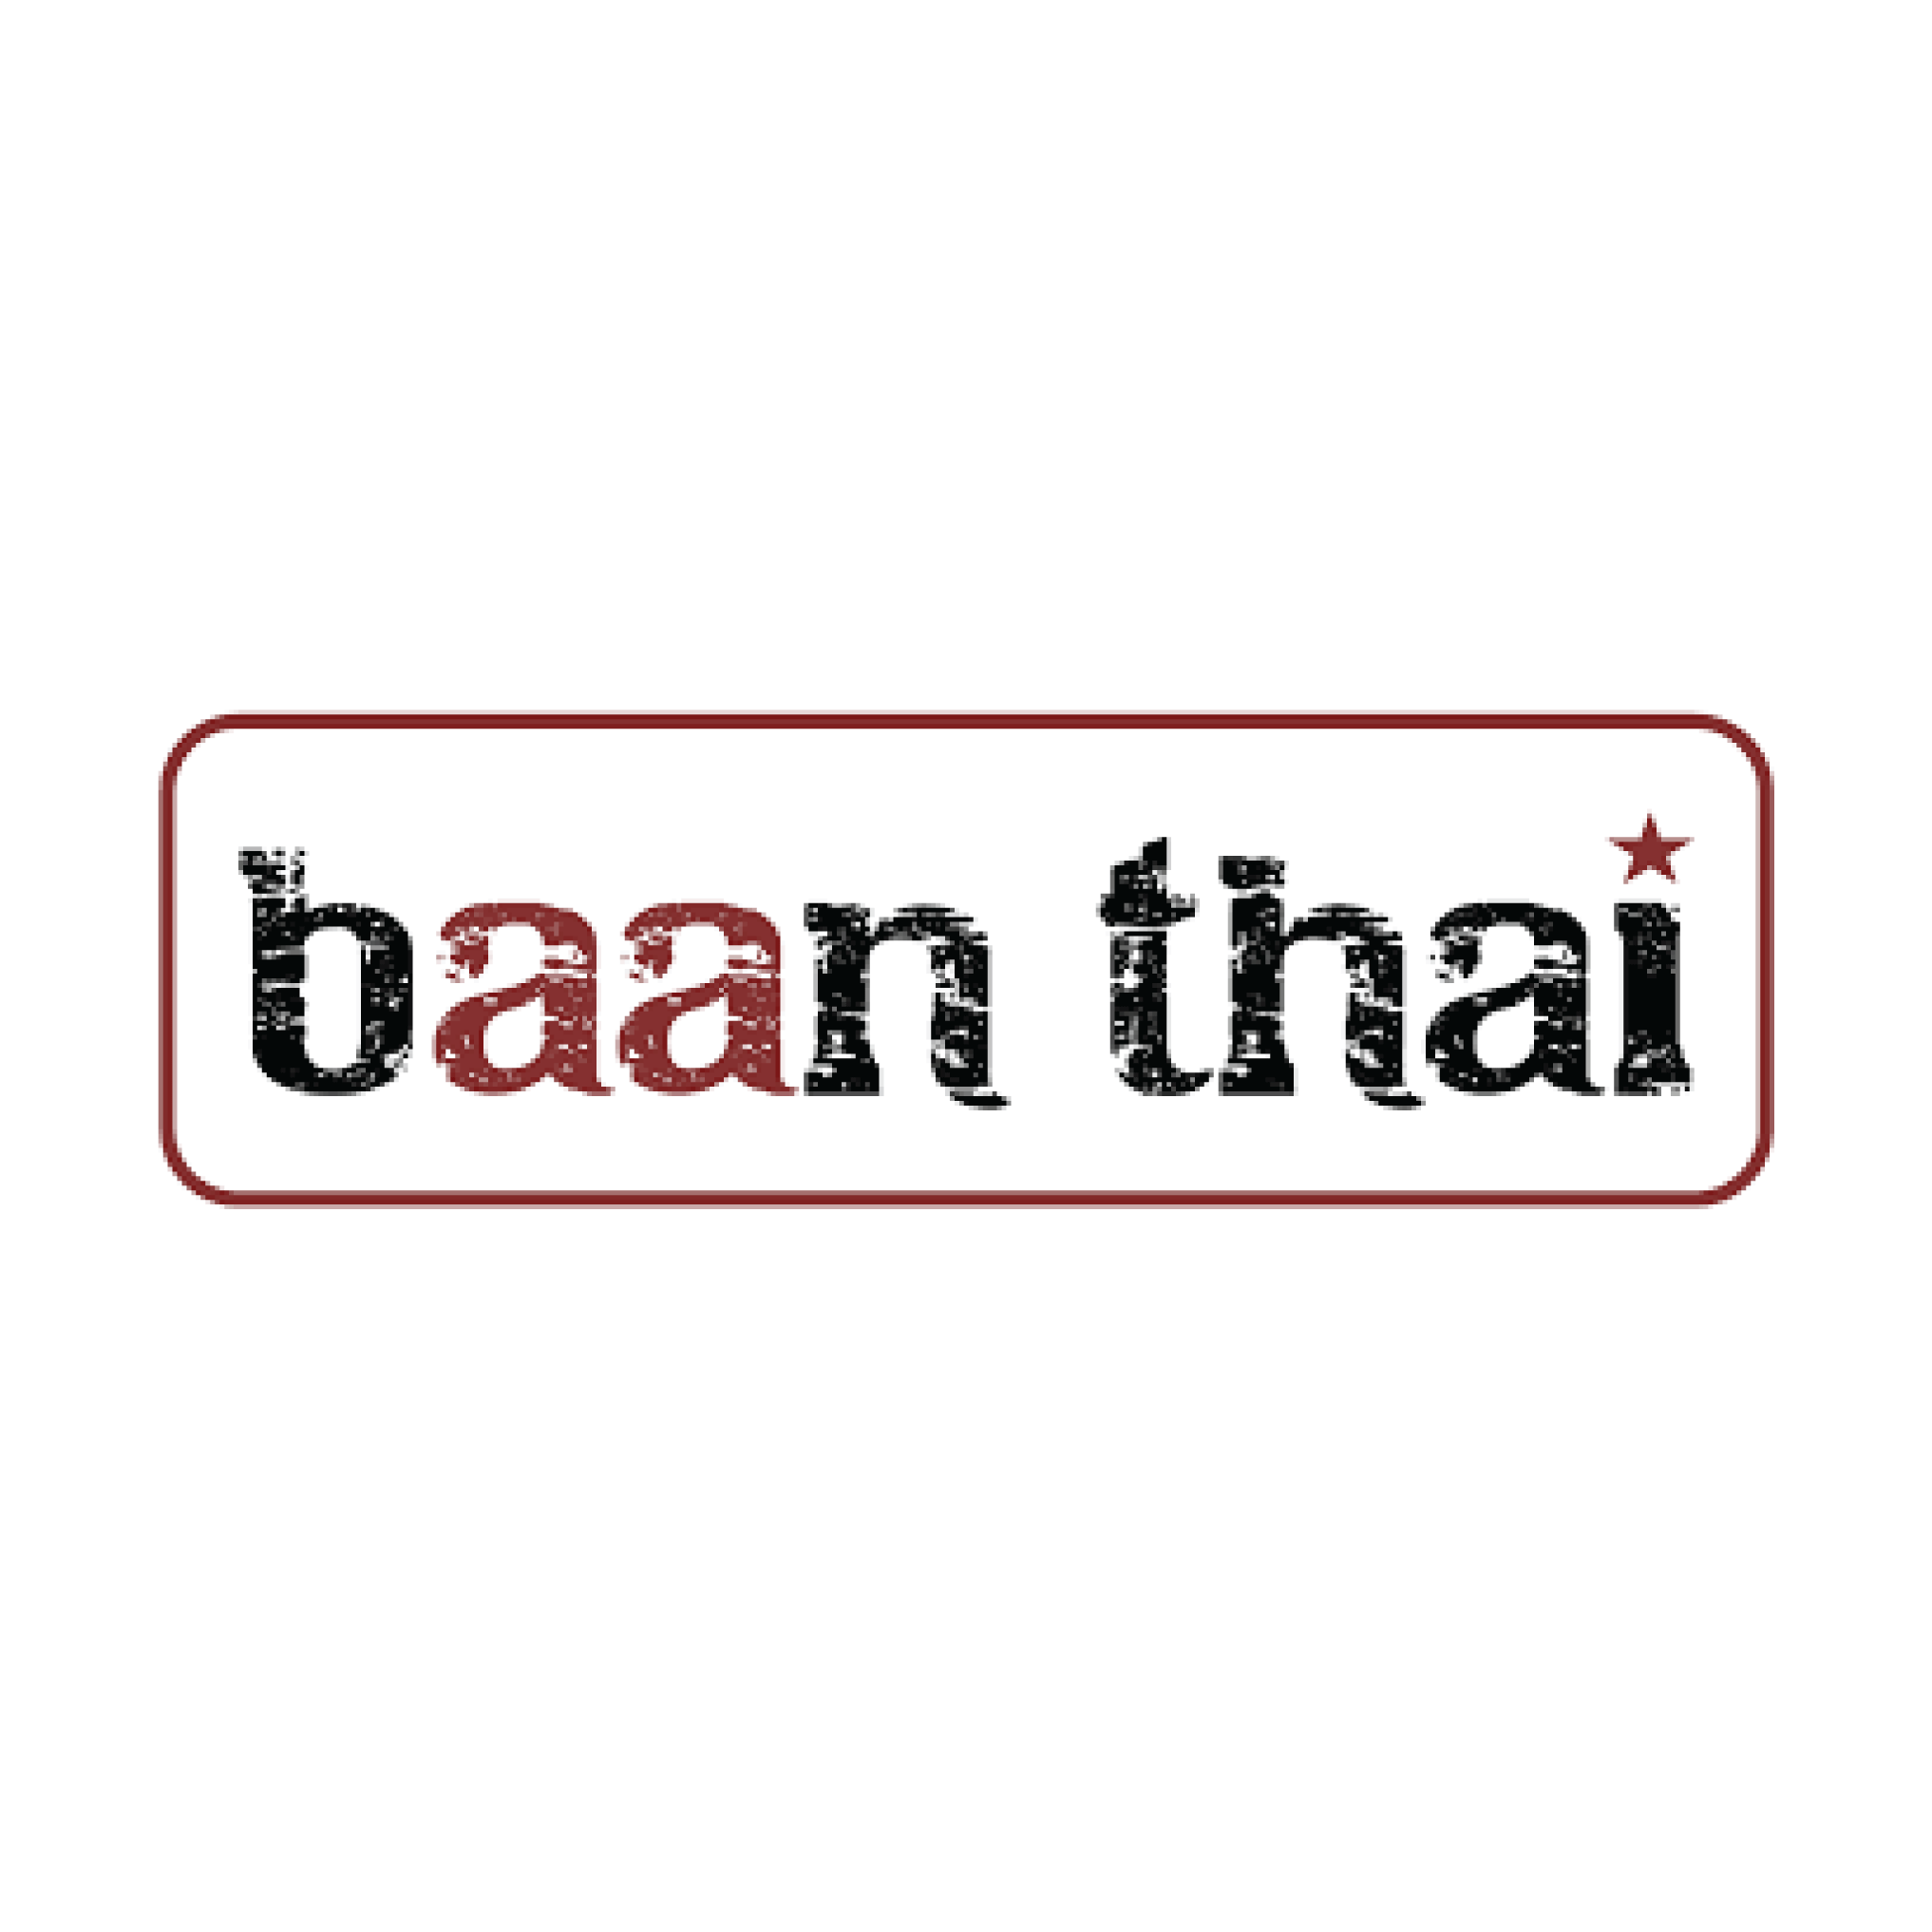 BAAN THAI